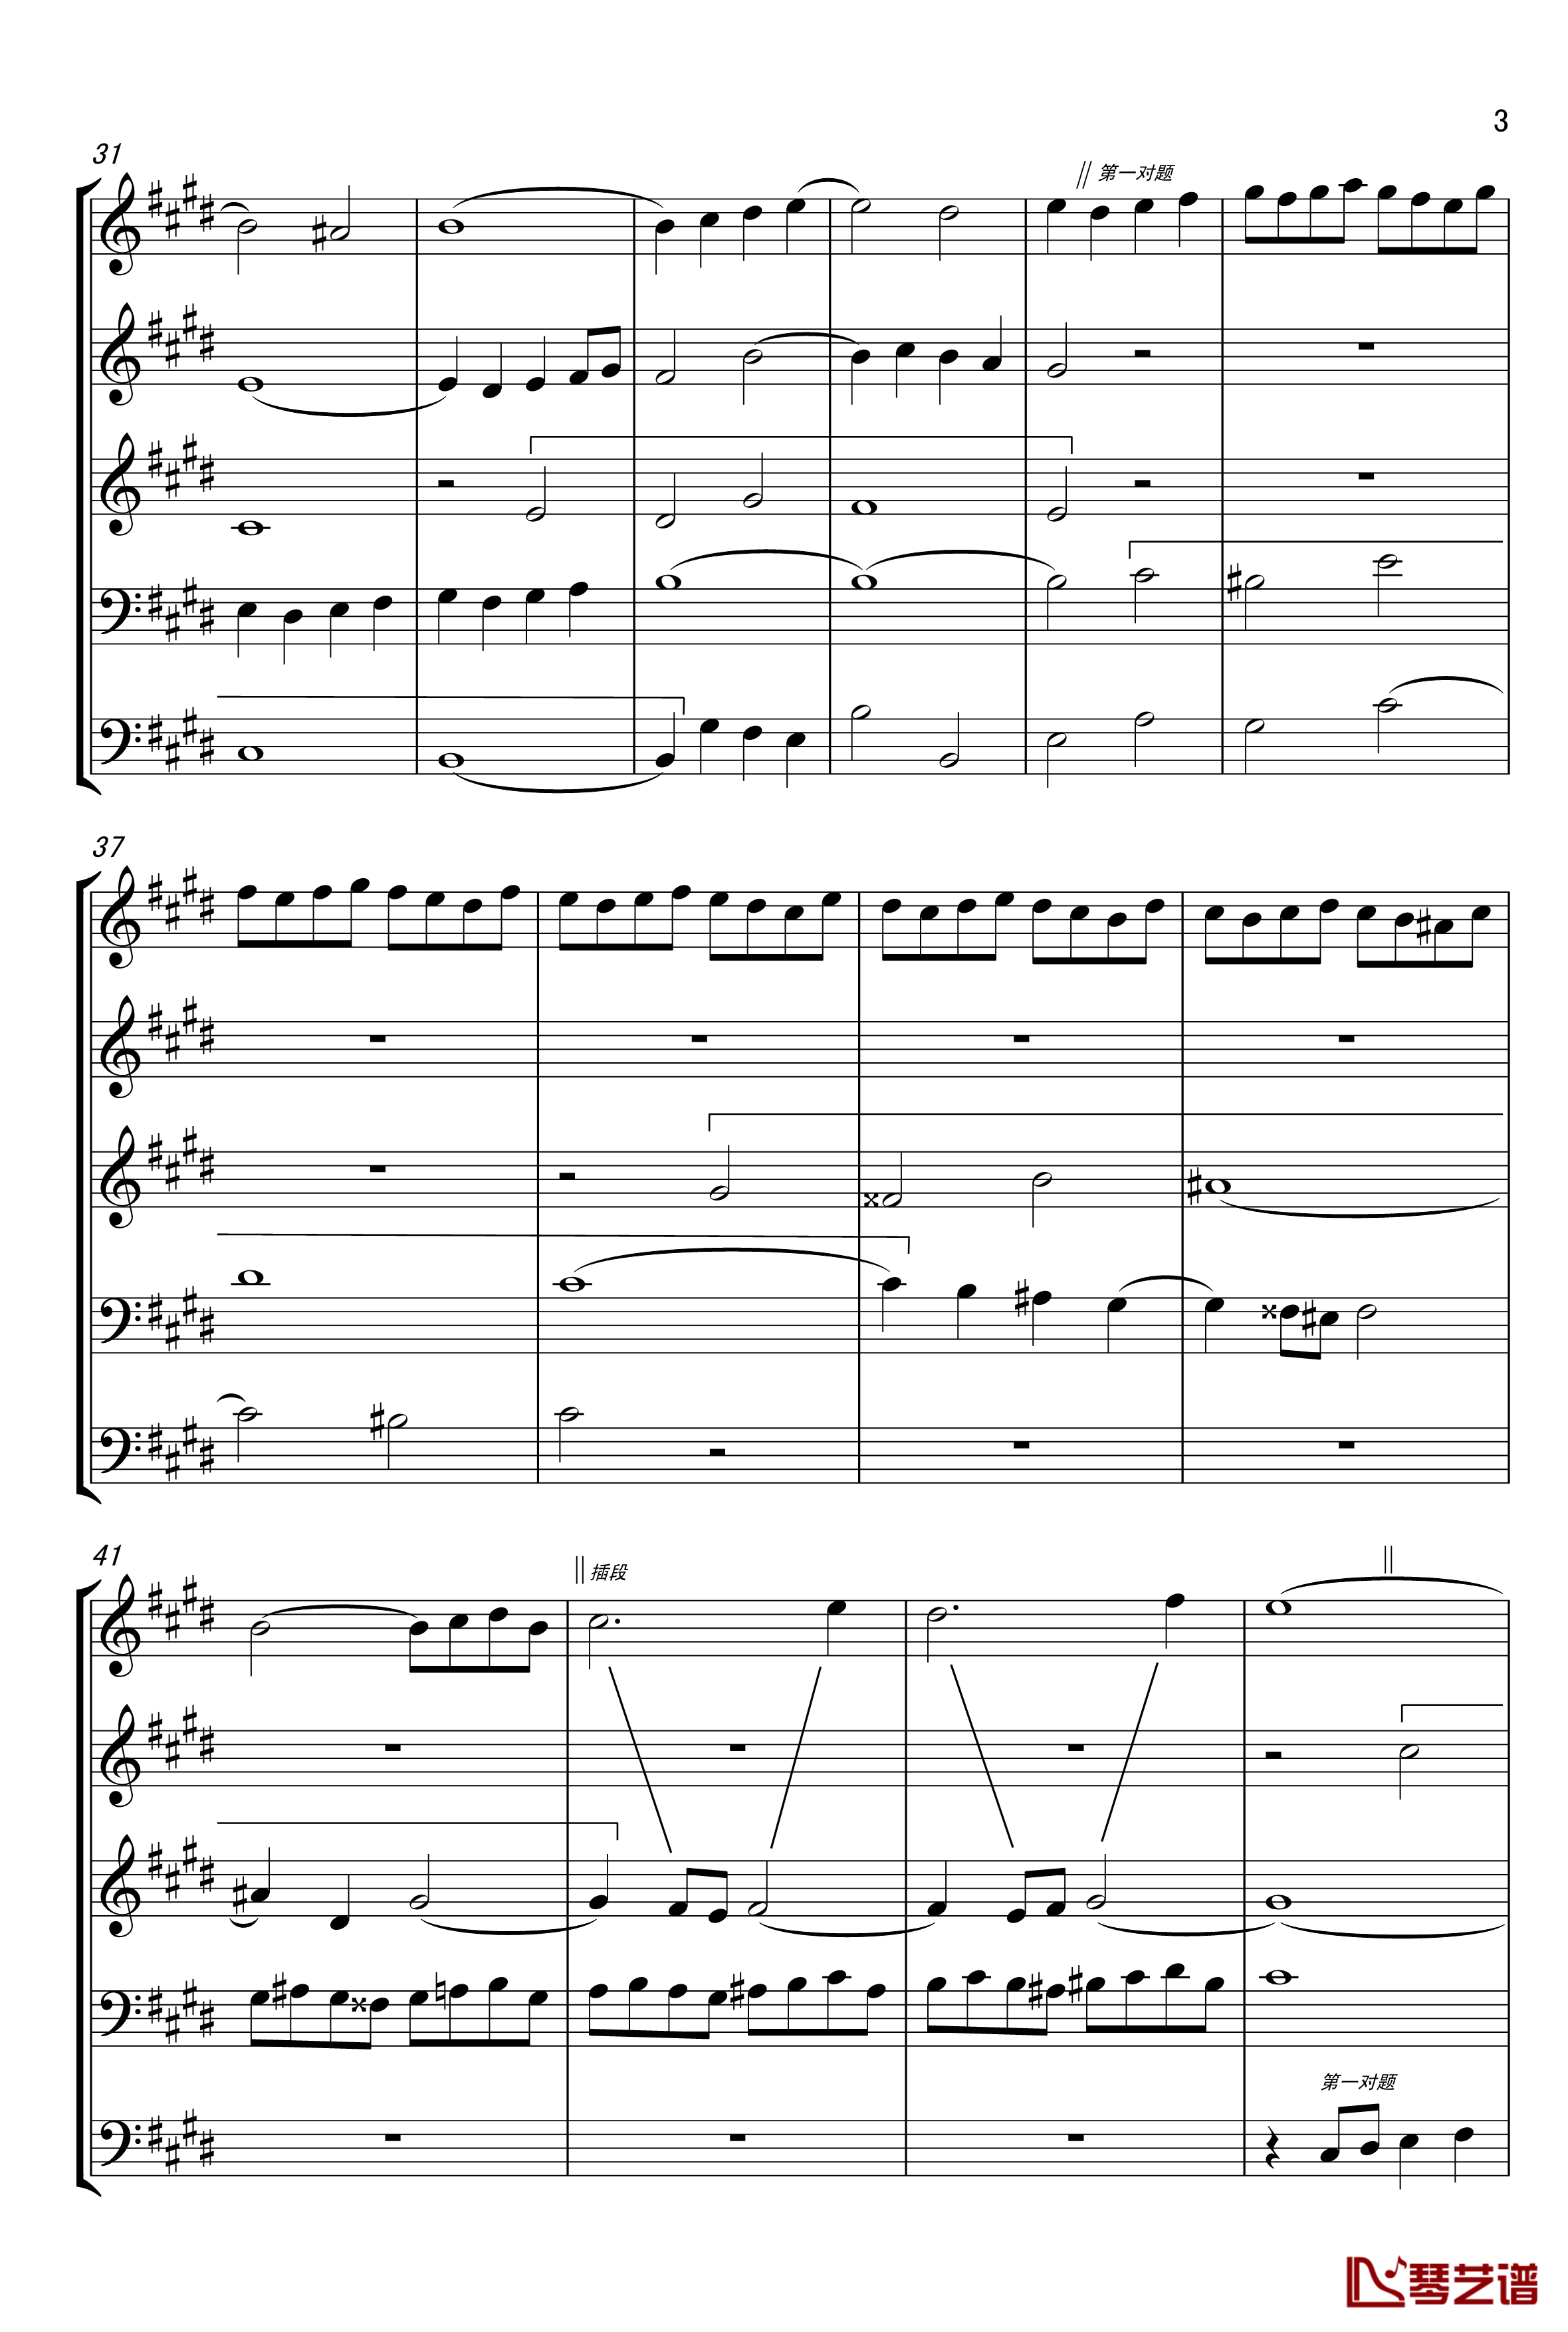 c小调赋格声部分析谱钢琴谱-选自巴赫平均律第一册-巴赫3